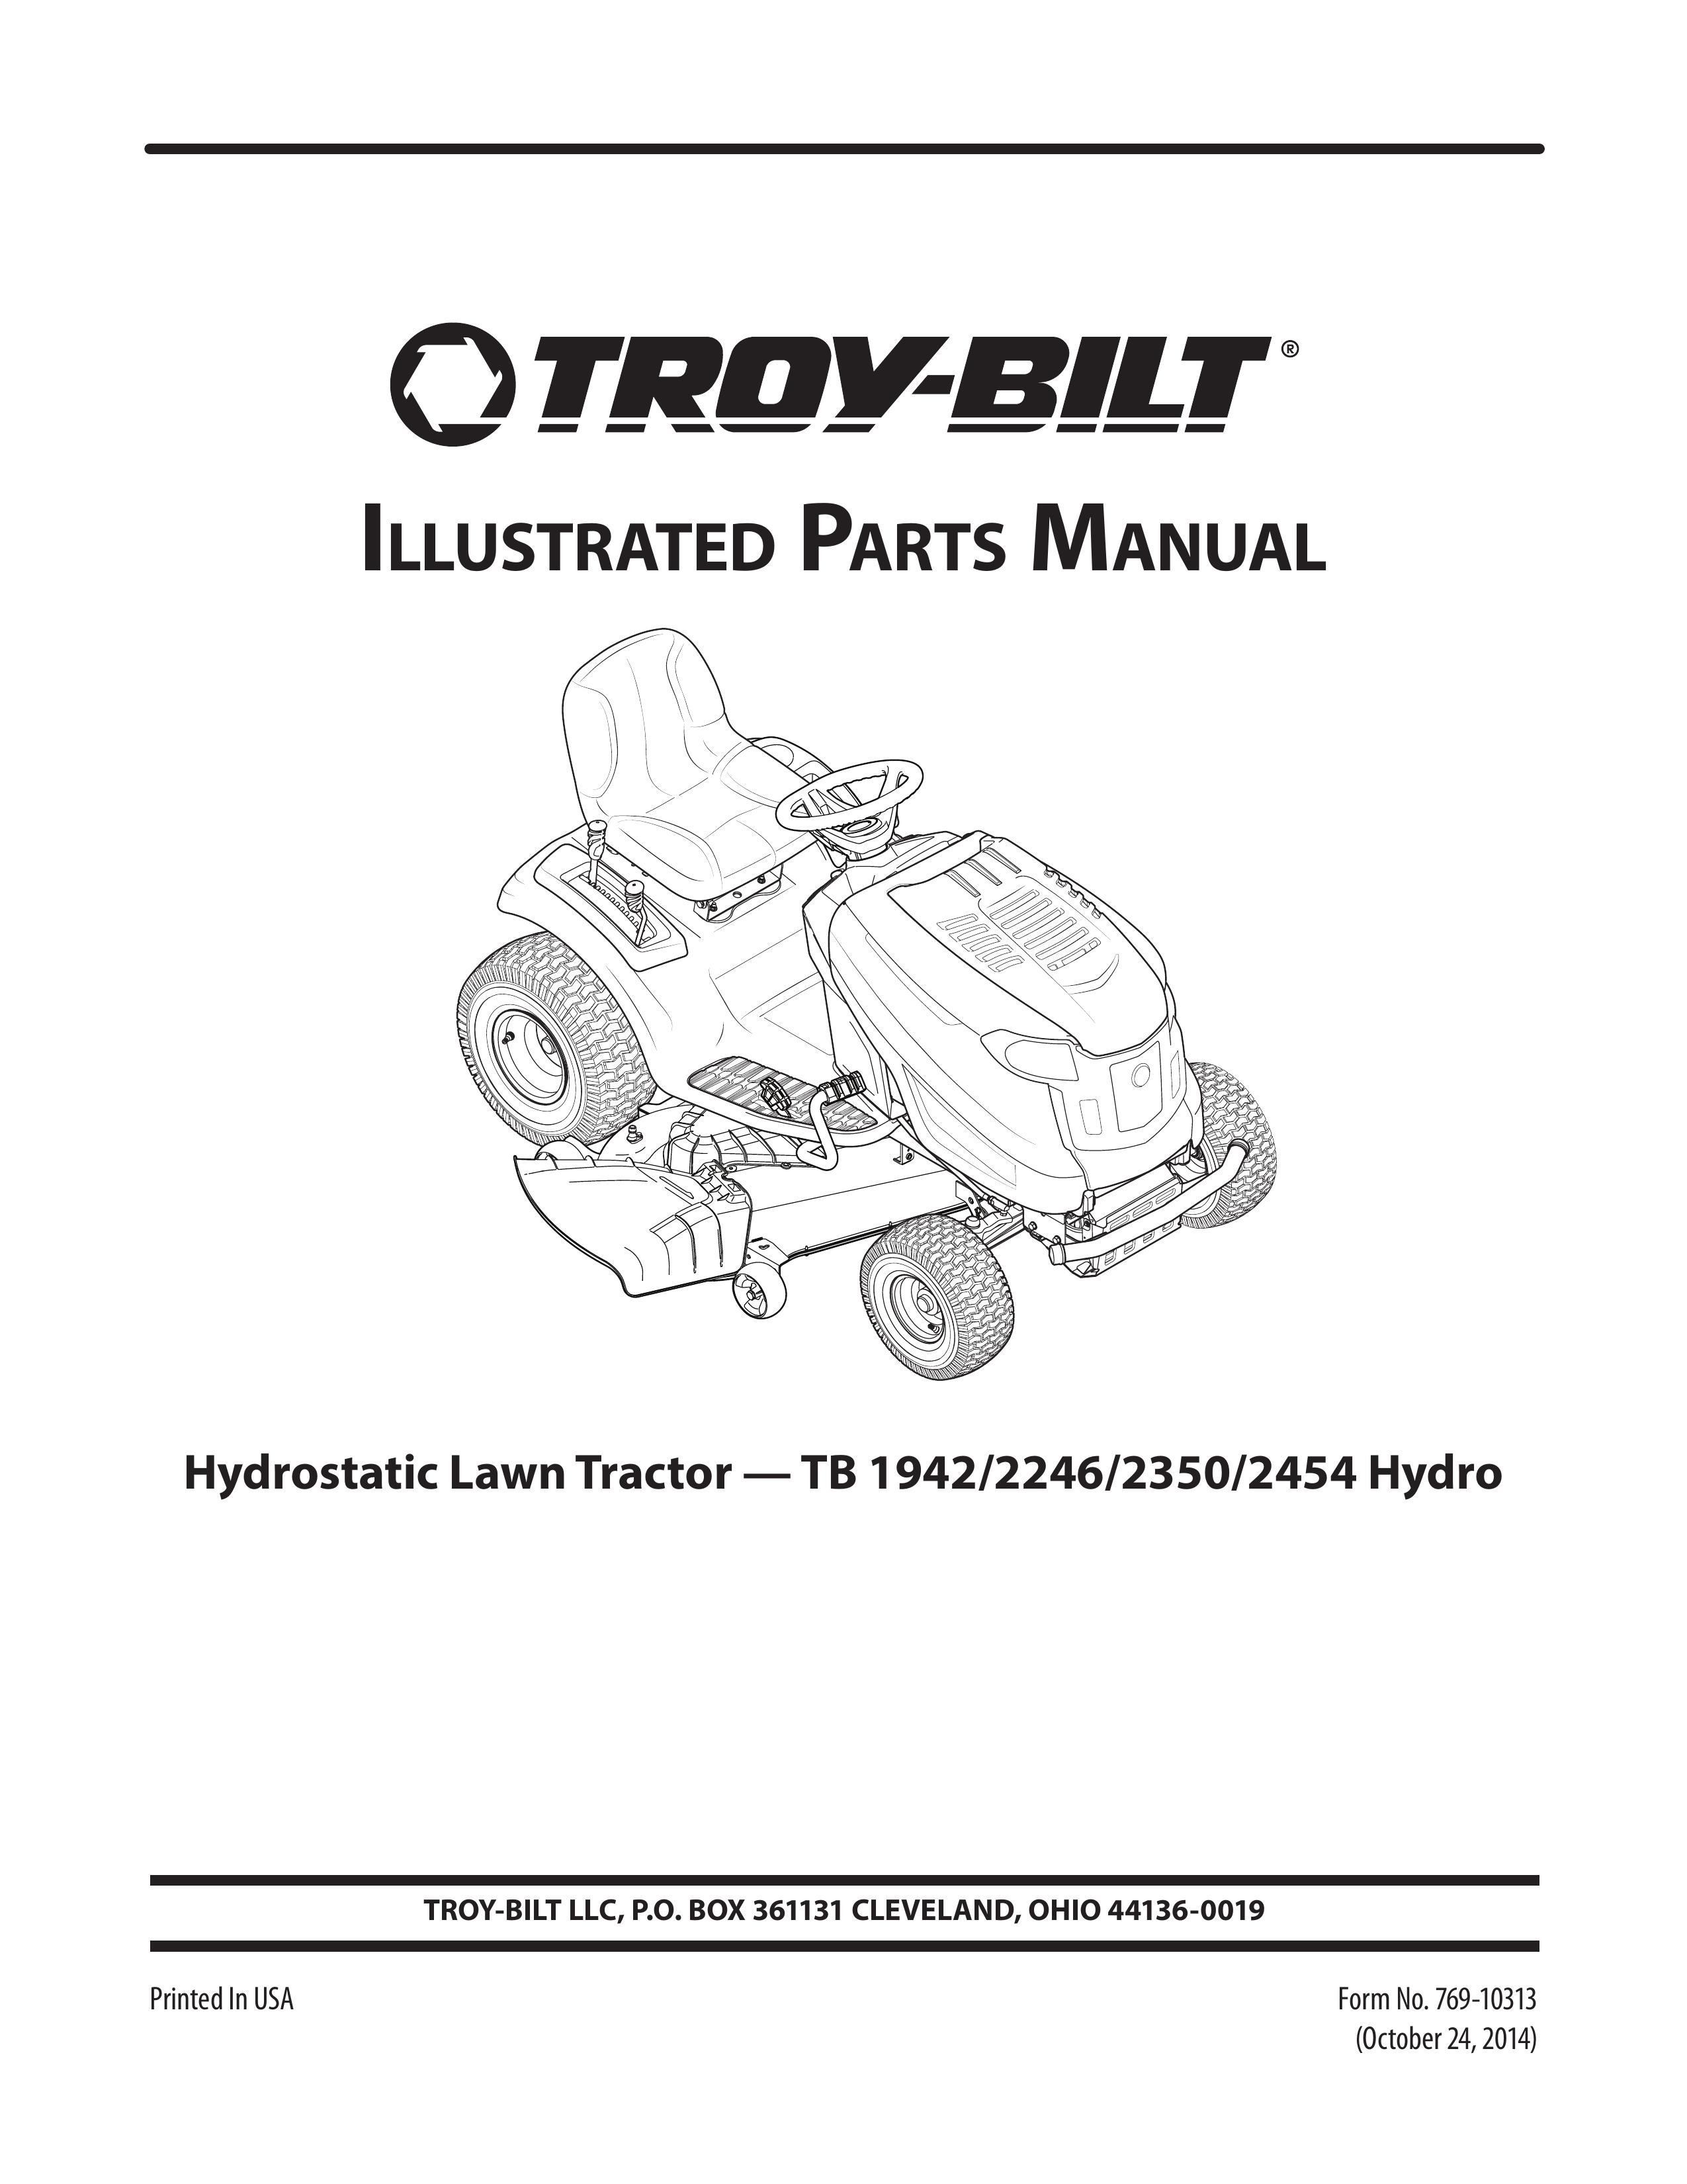 Troy-Bilt 2350 Lawn Mower User Manual